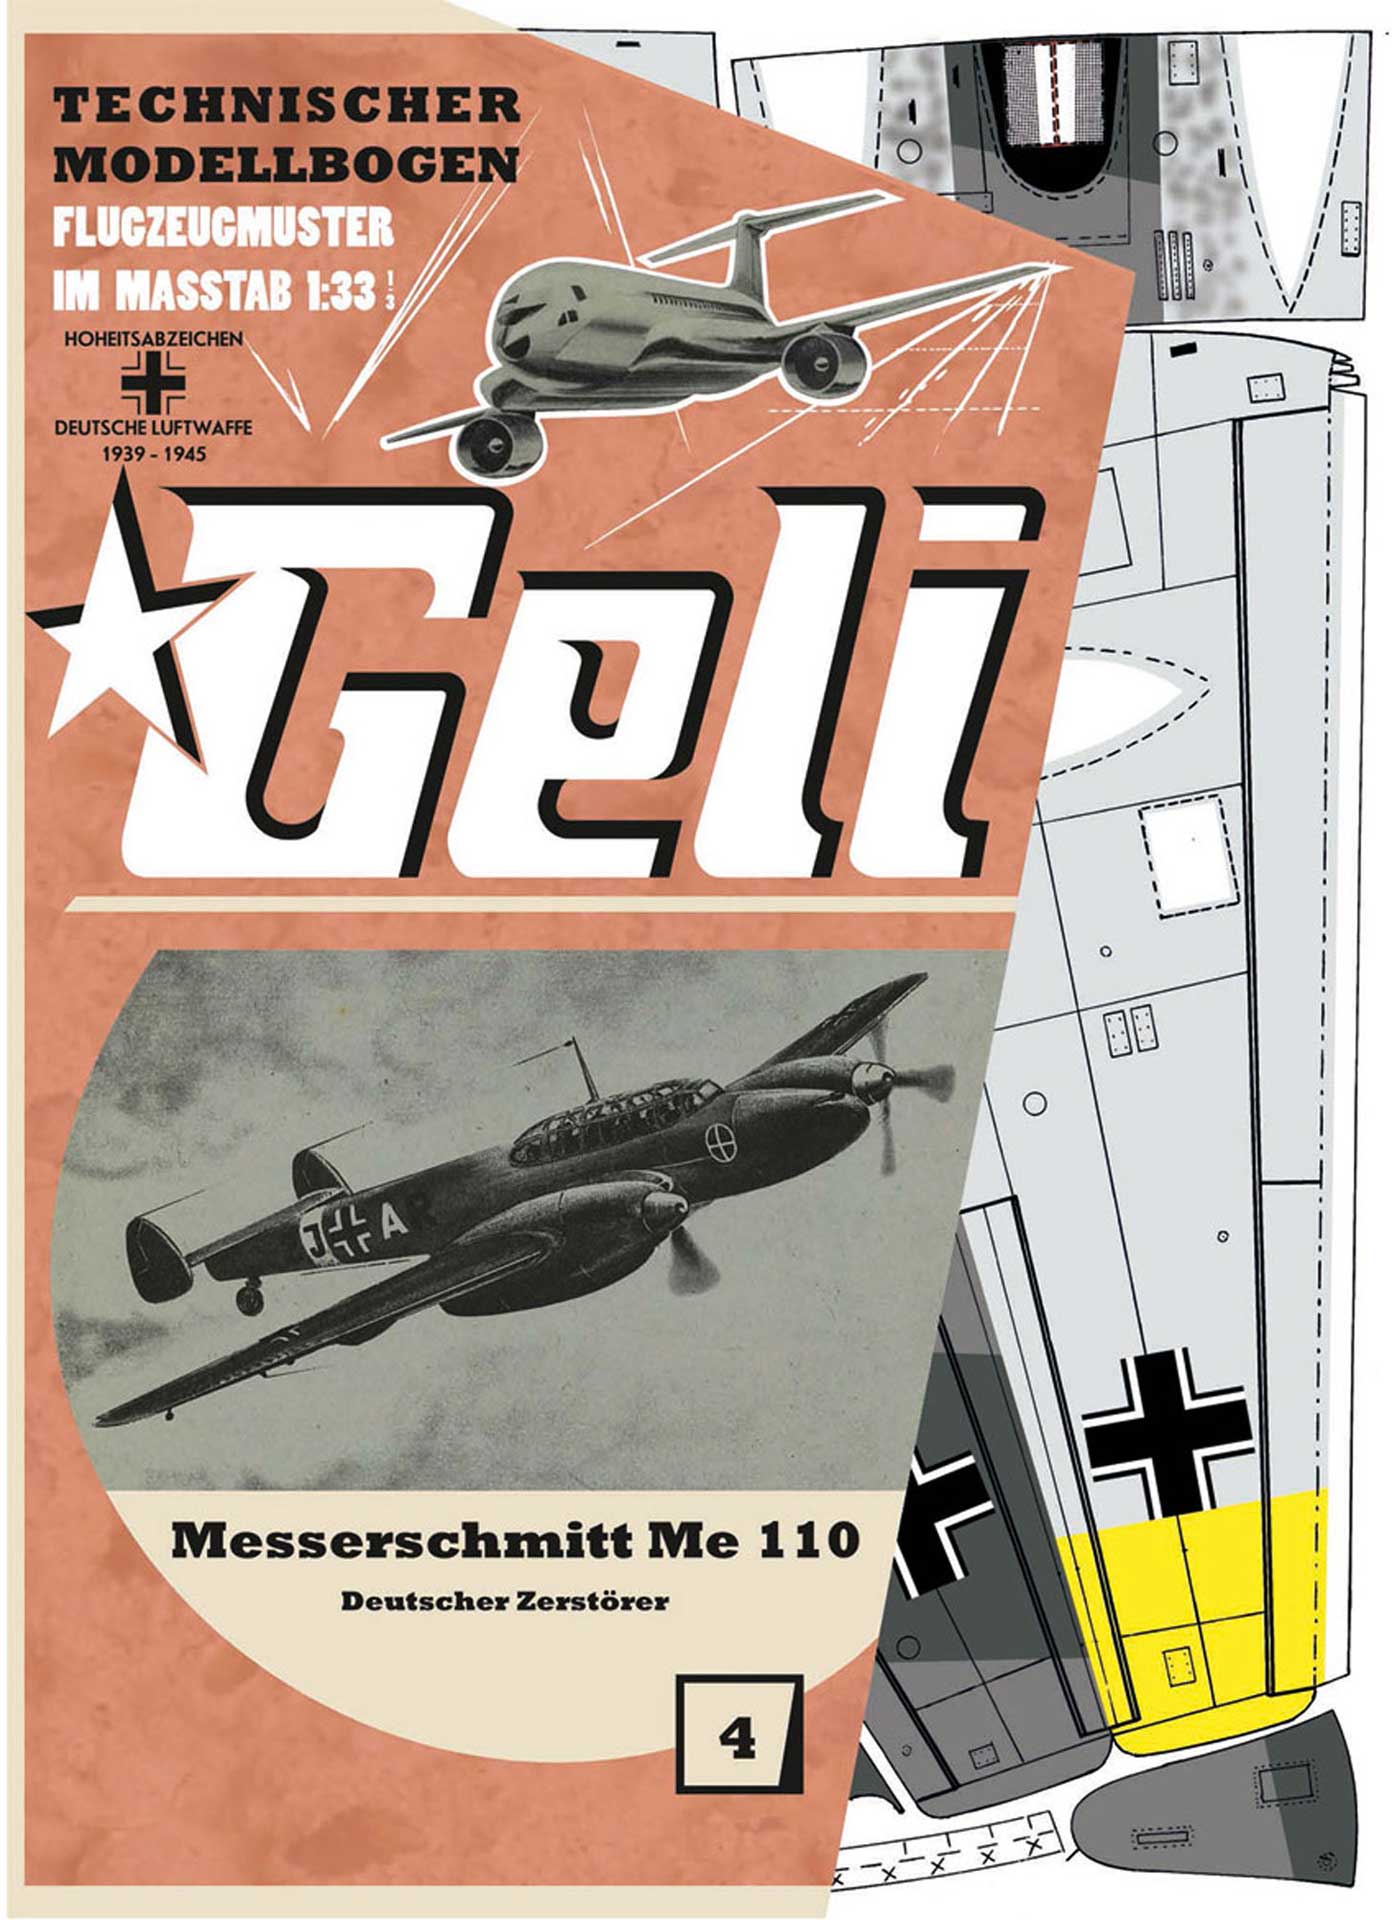 Kartonmodell Messerschmitt Me 163 1:33 Geli 